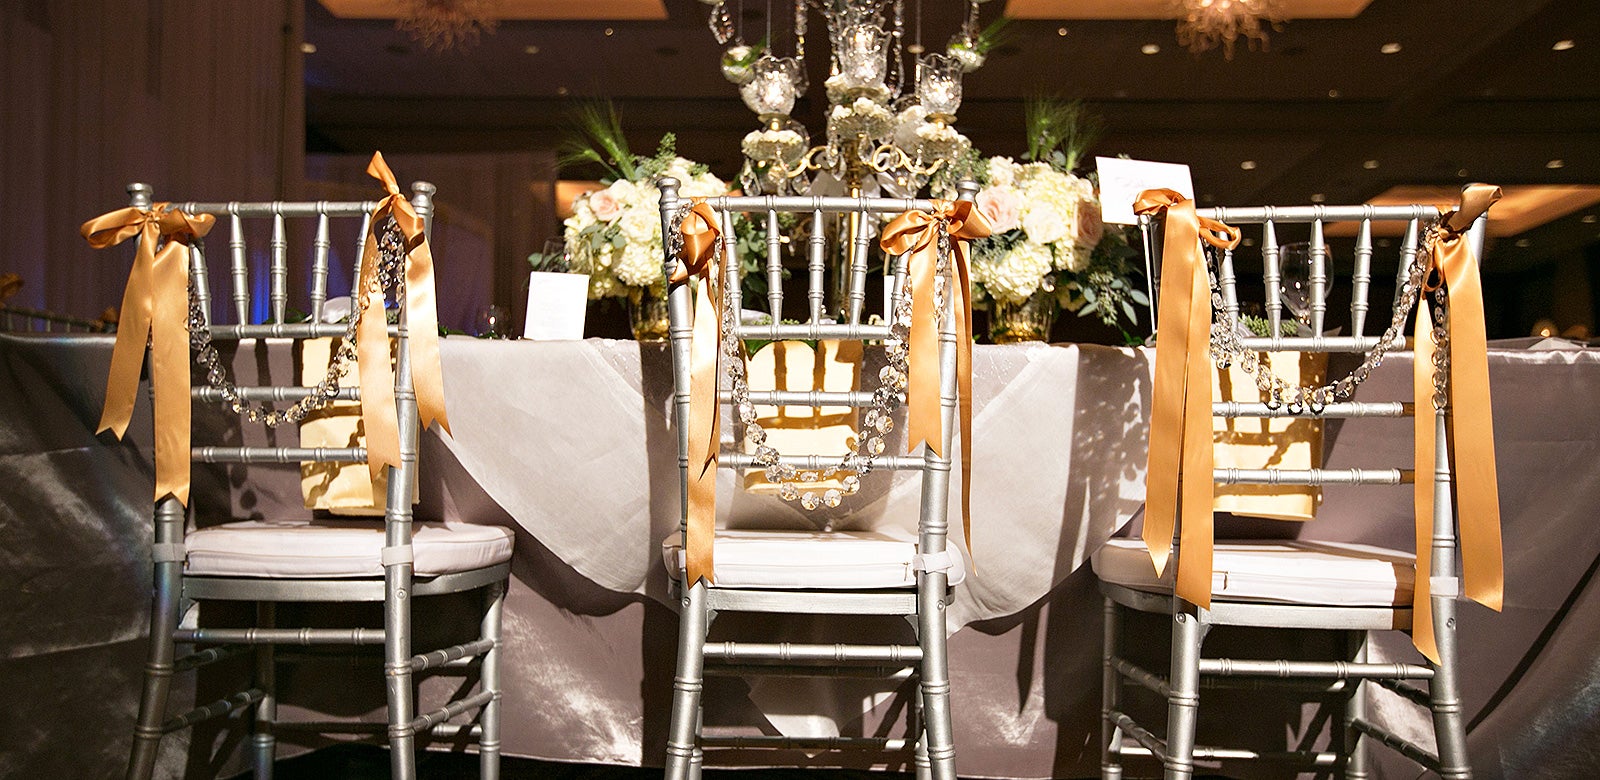 Atlanta Wedding Venue Reception Catering And Wedding Planning